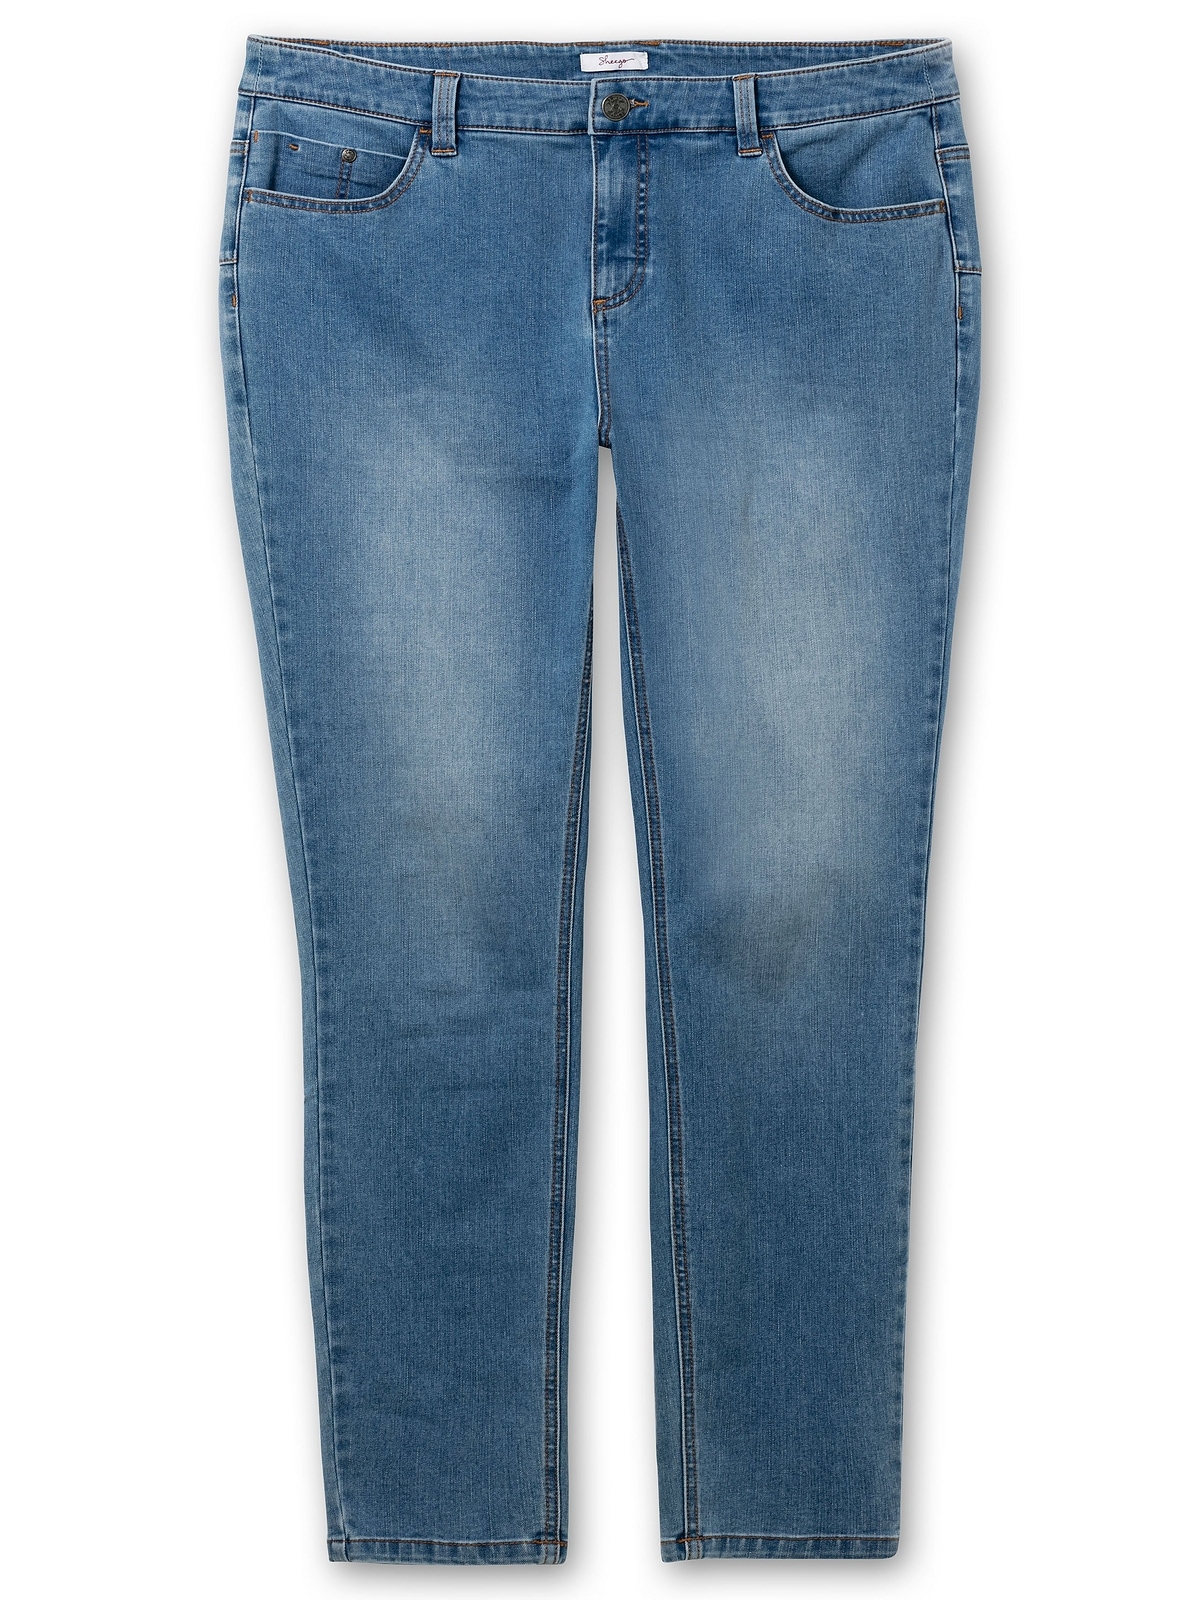 Sheego Stretch-Jeans sehr für mehr Beine Bauch und Größen«, schmale »Große shoppen